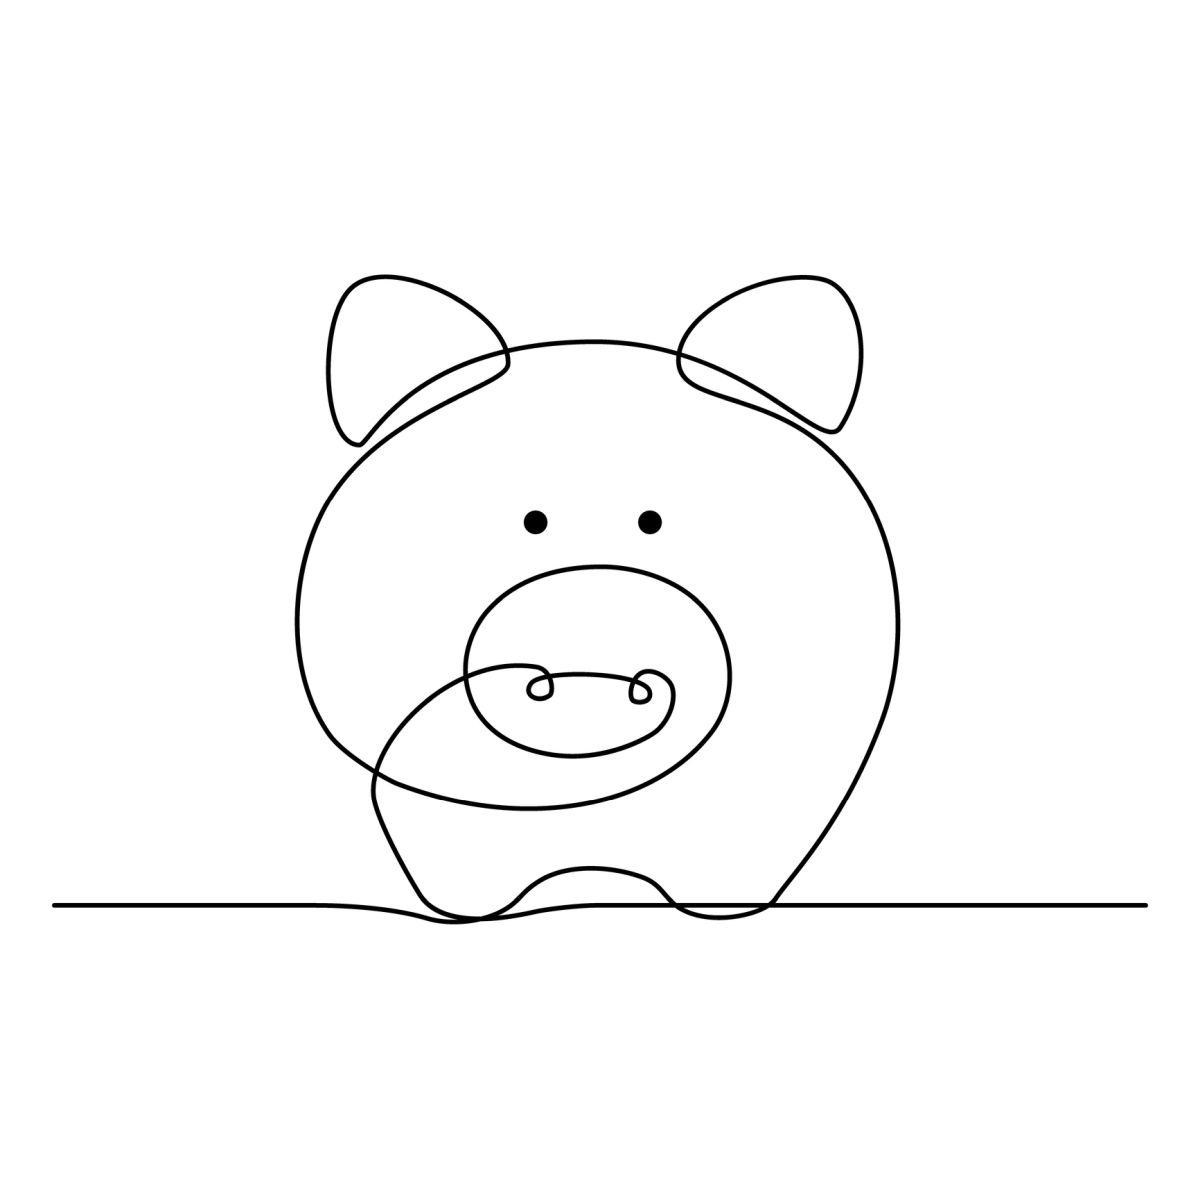 Wie man ein Schwein zeichnet: 10 einfache Zeichnungsprojekte